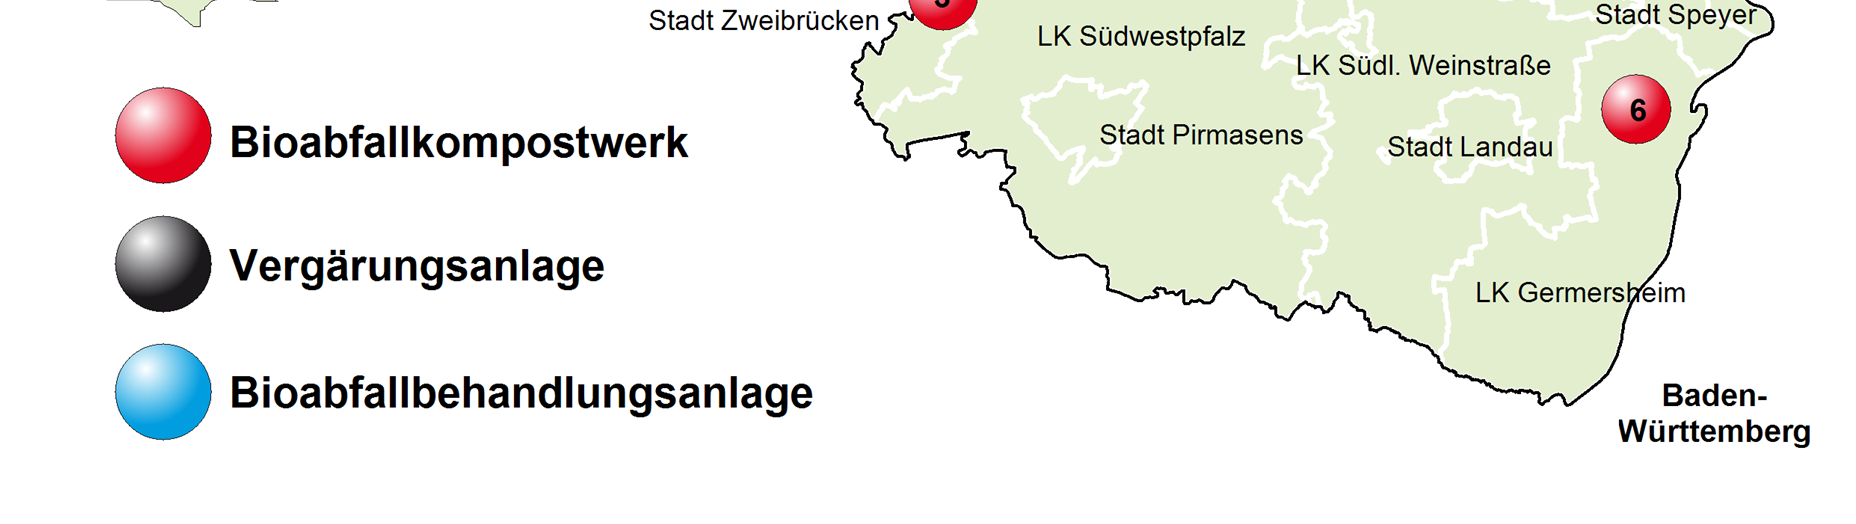 Siedlungsabfallbilanz Rheinland-Pfalz 2012 Abb.